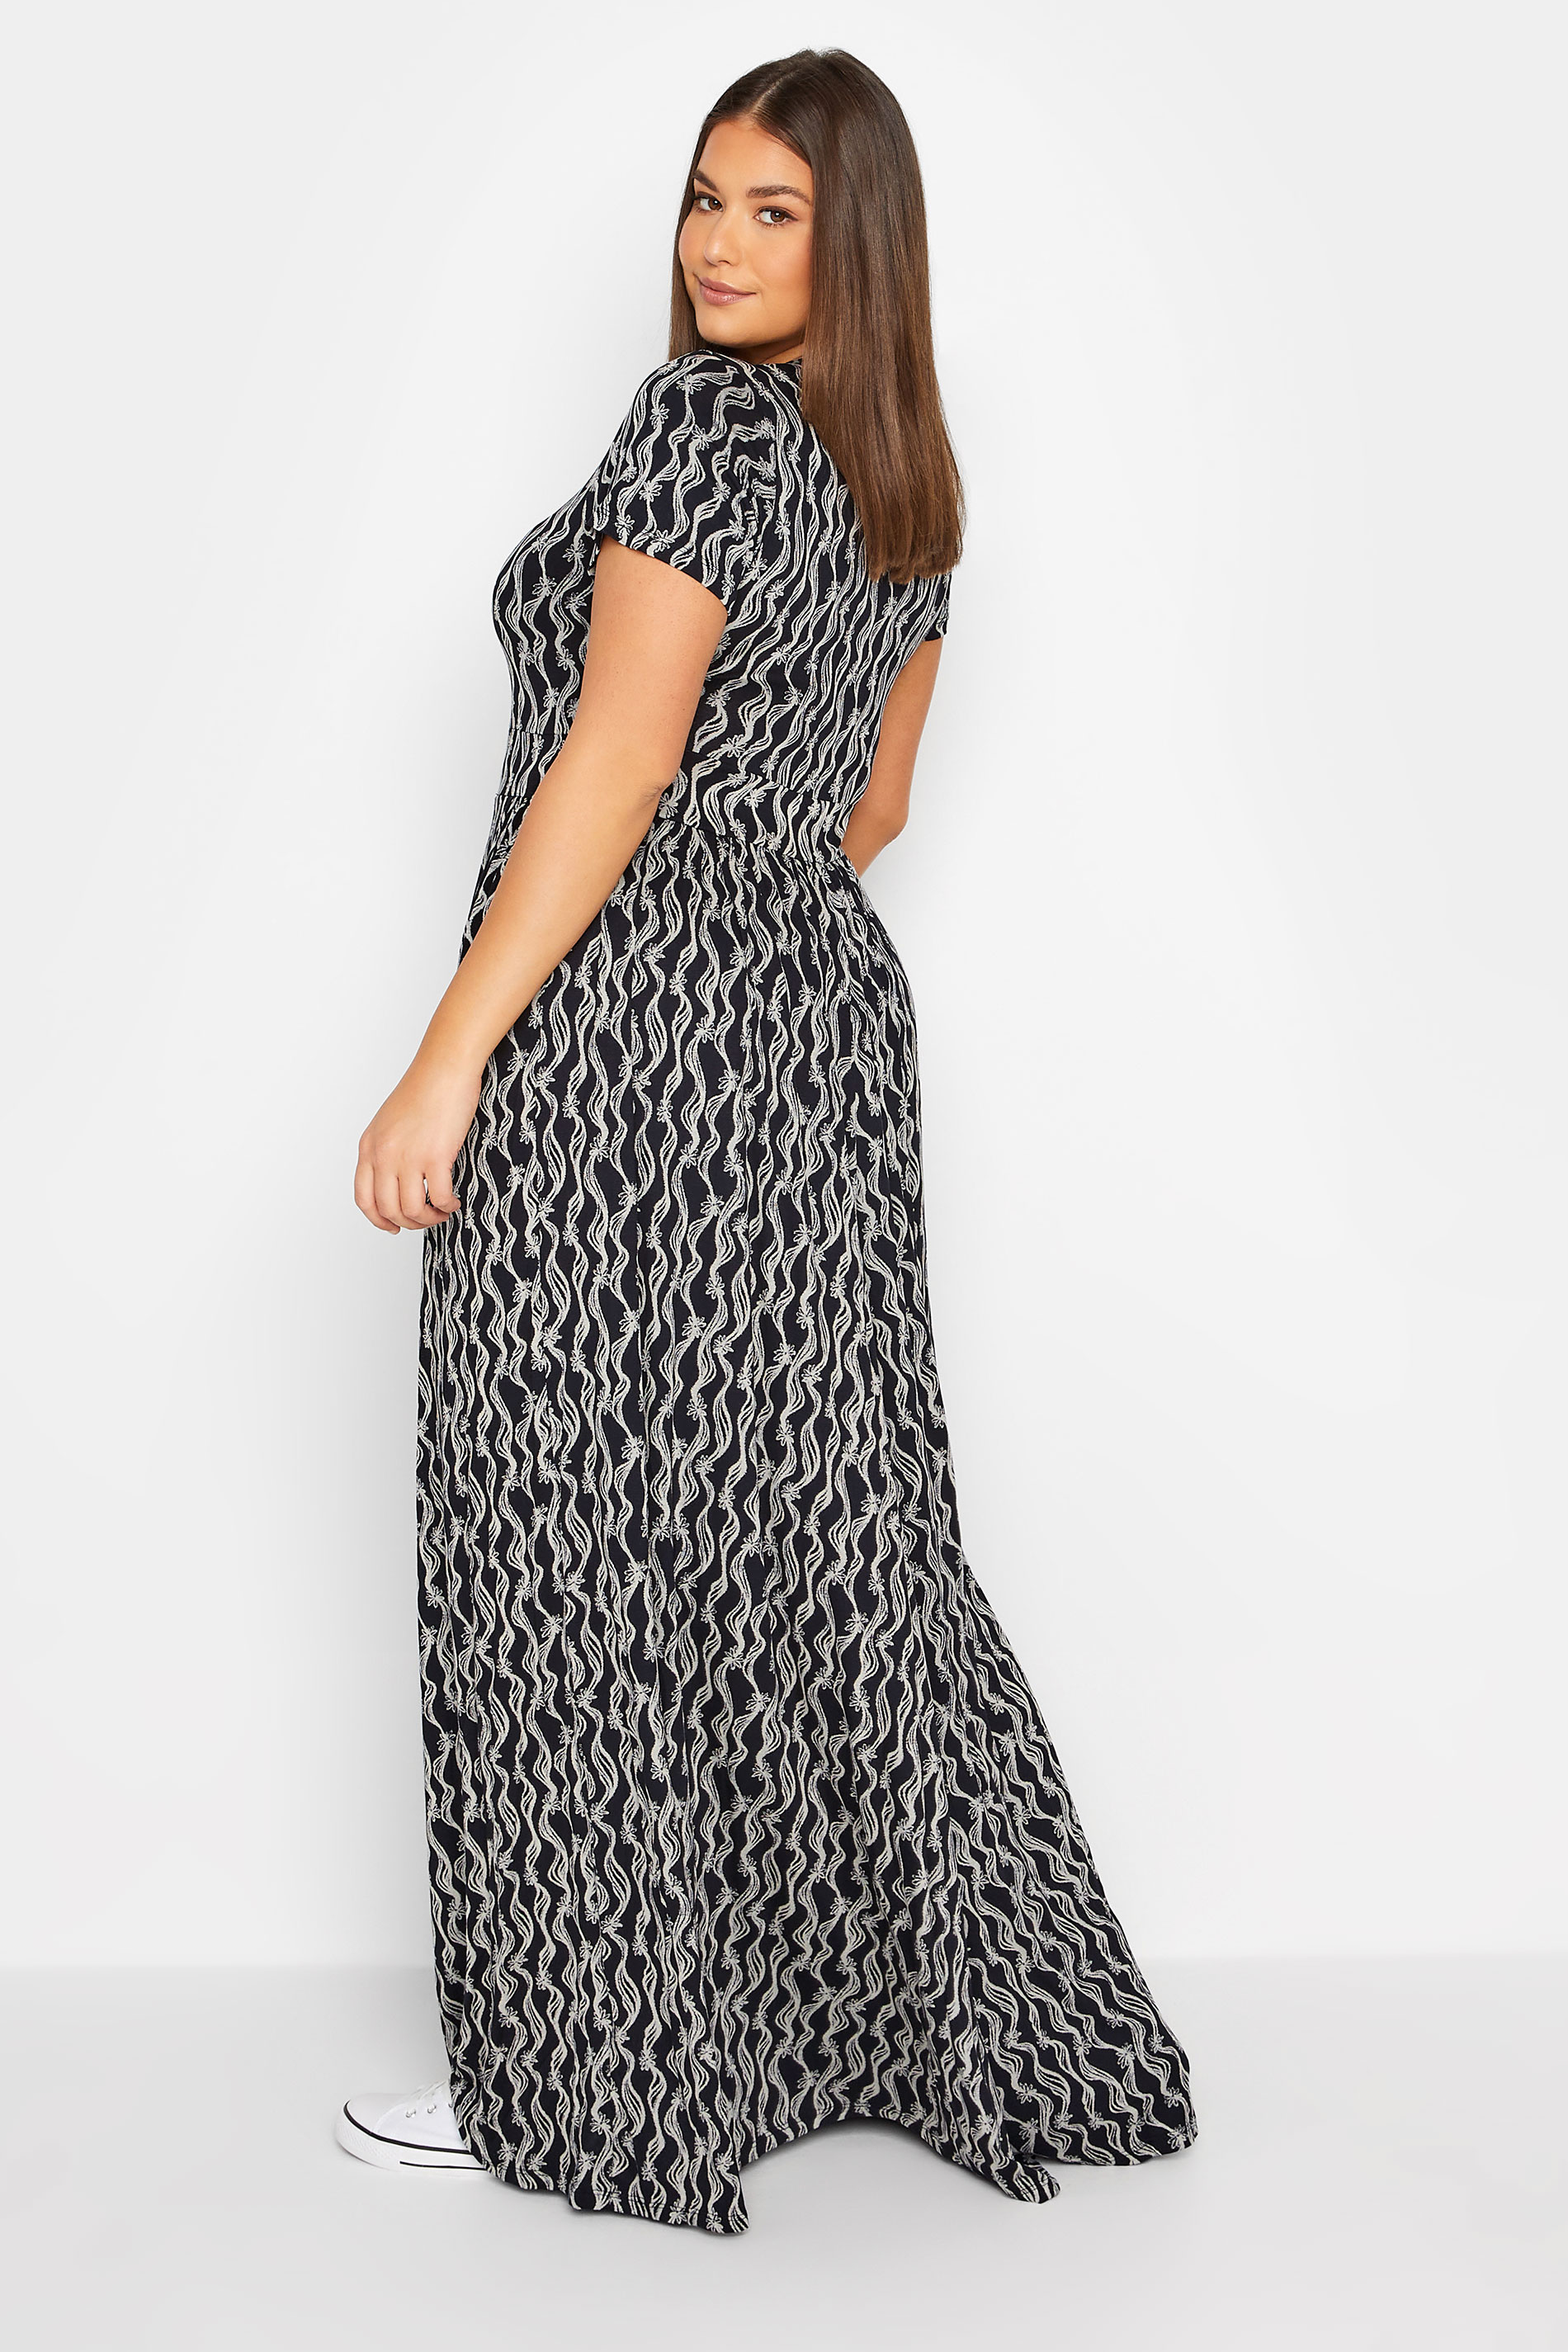 LTS Tall Women's Black Swirl Floral Maxi Dress | Long Tall Sally 3